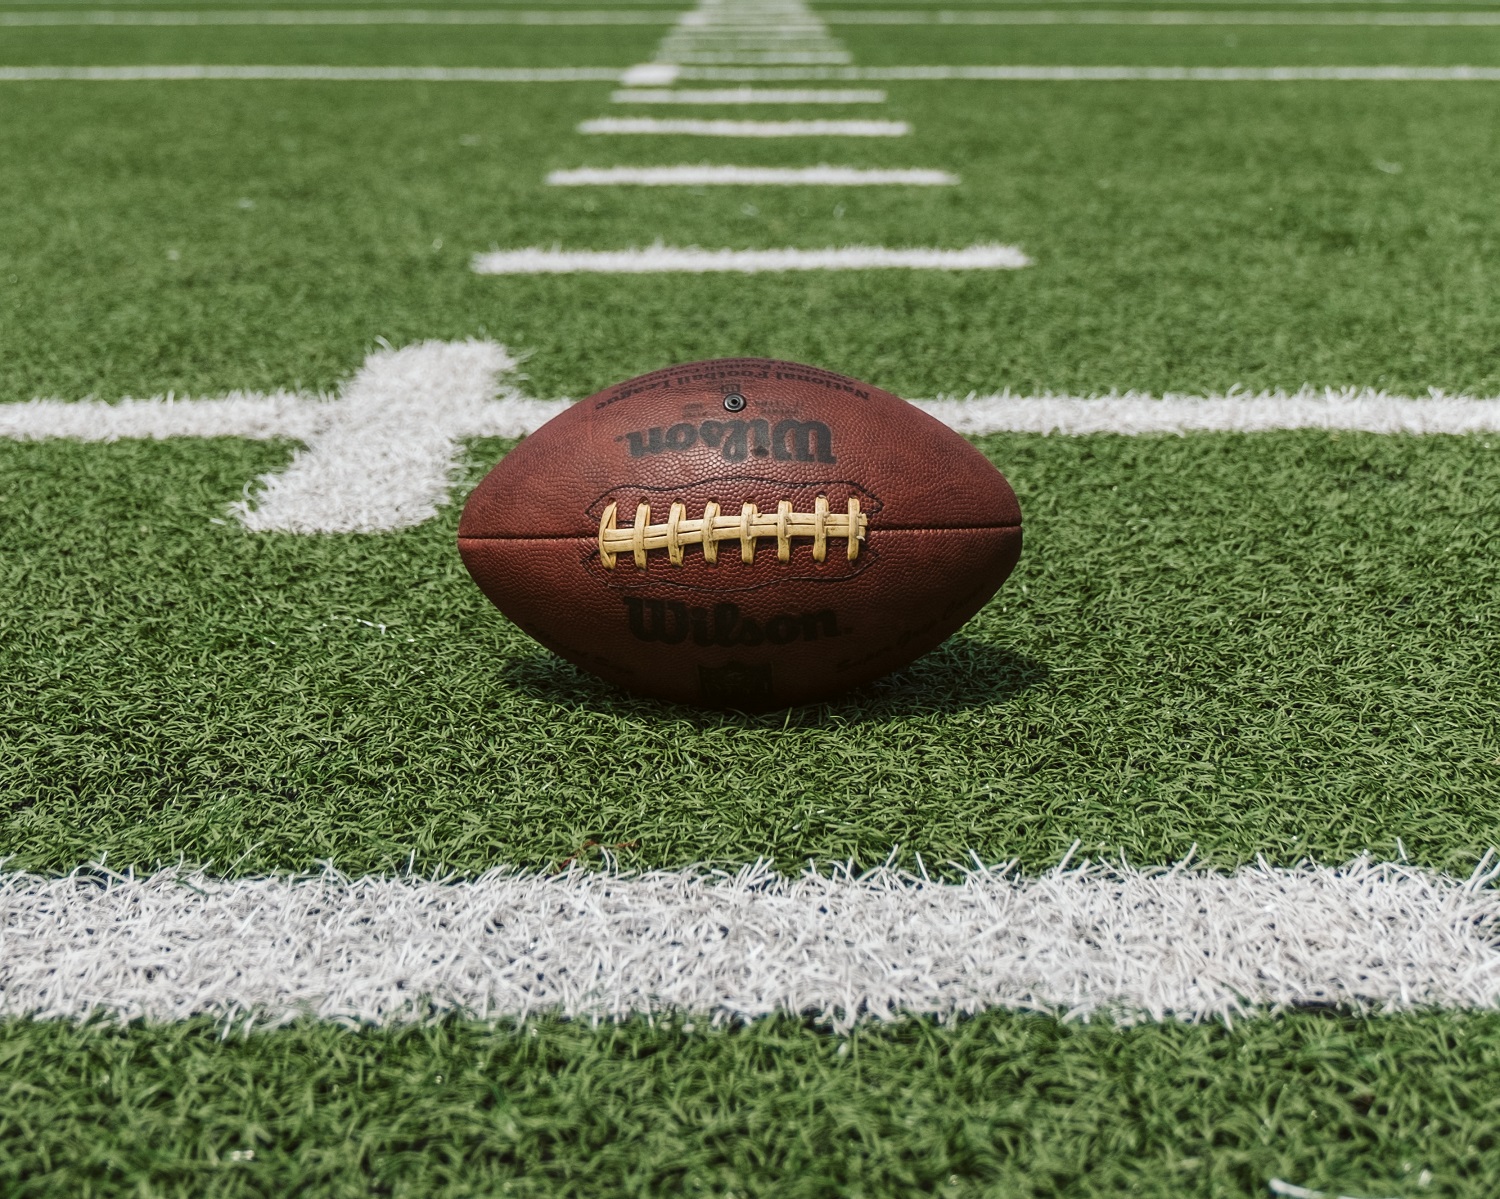 In-game ad revenue for Super Bowl LV neared $435 million